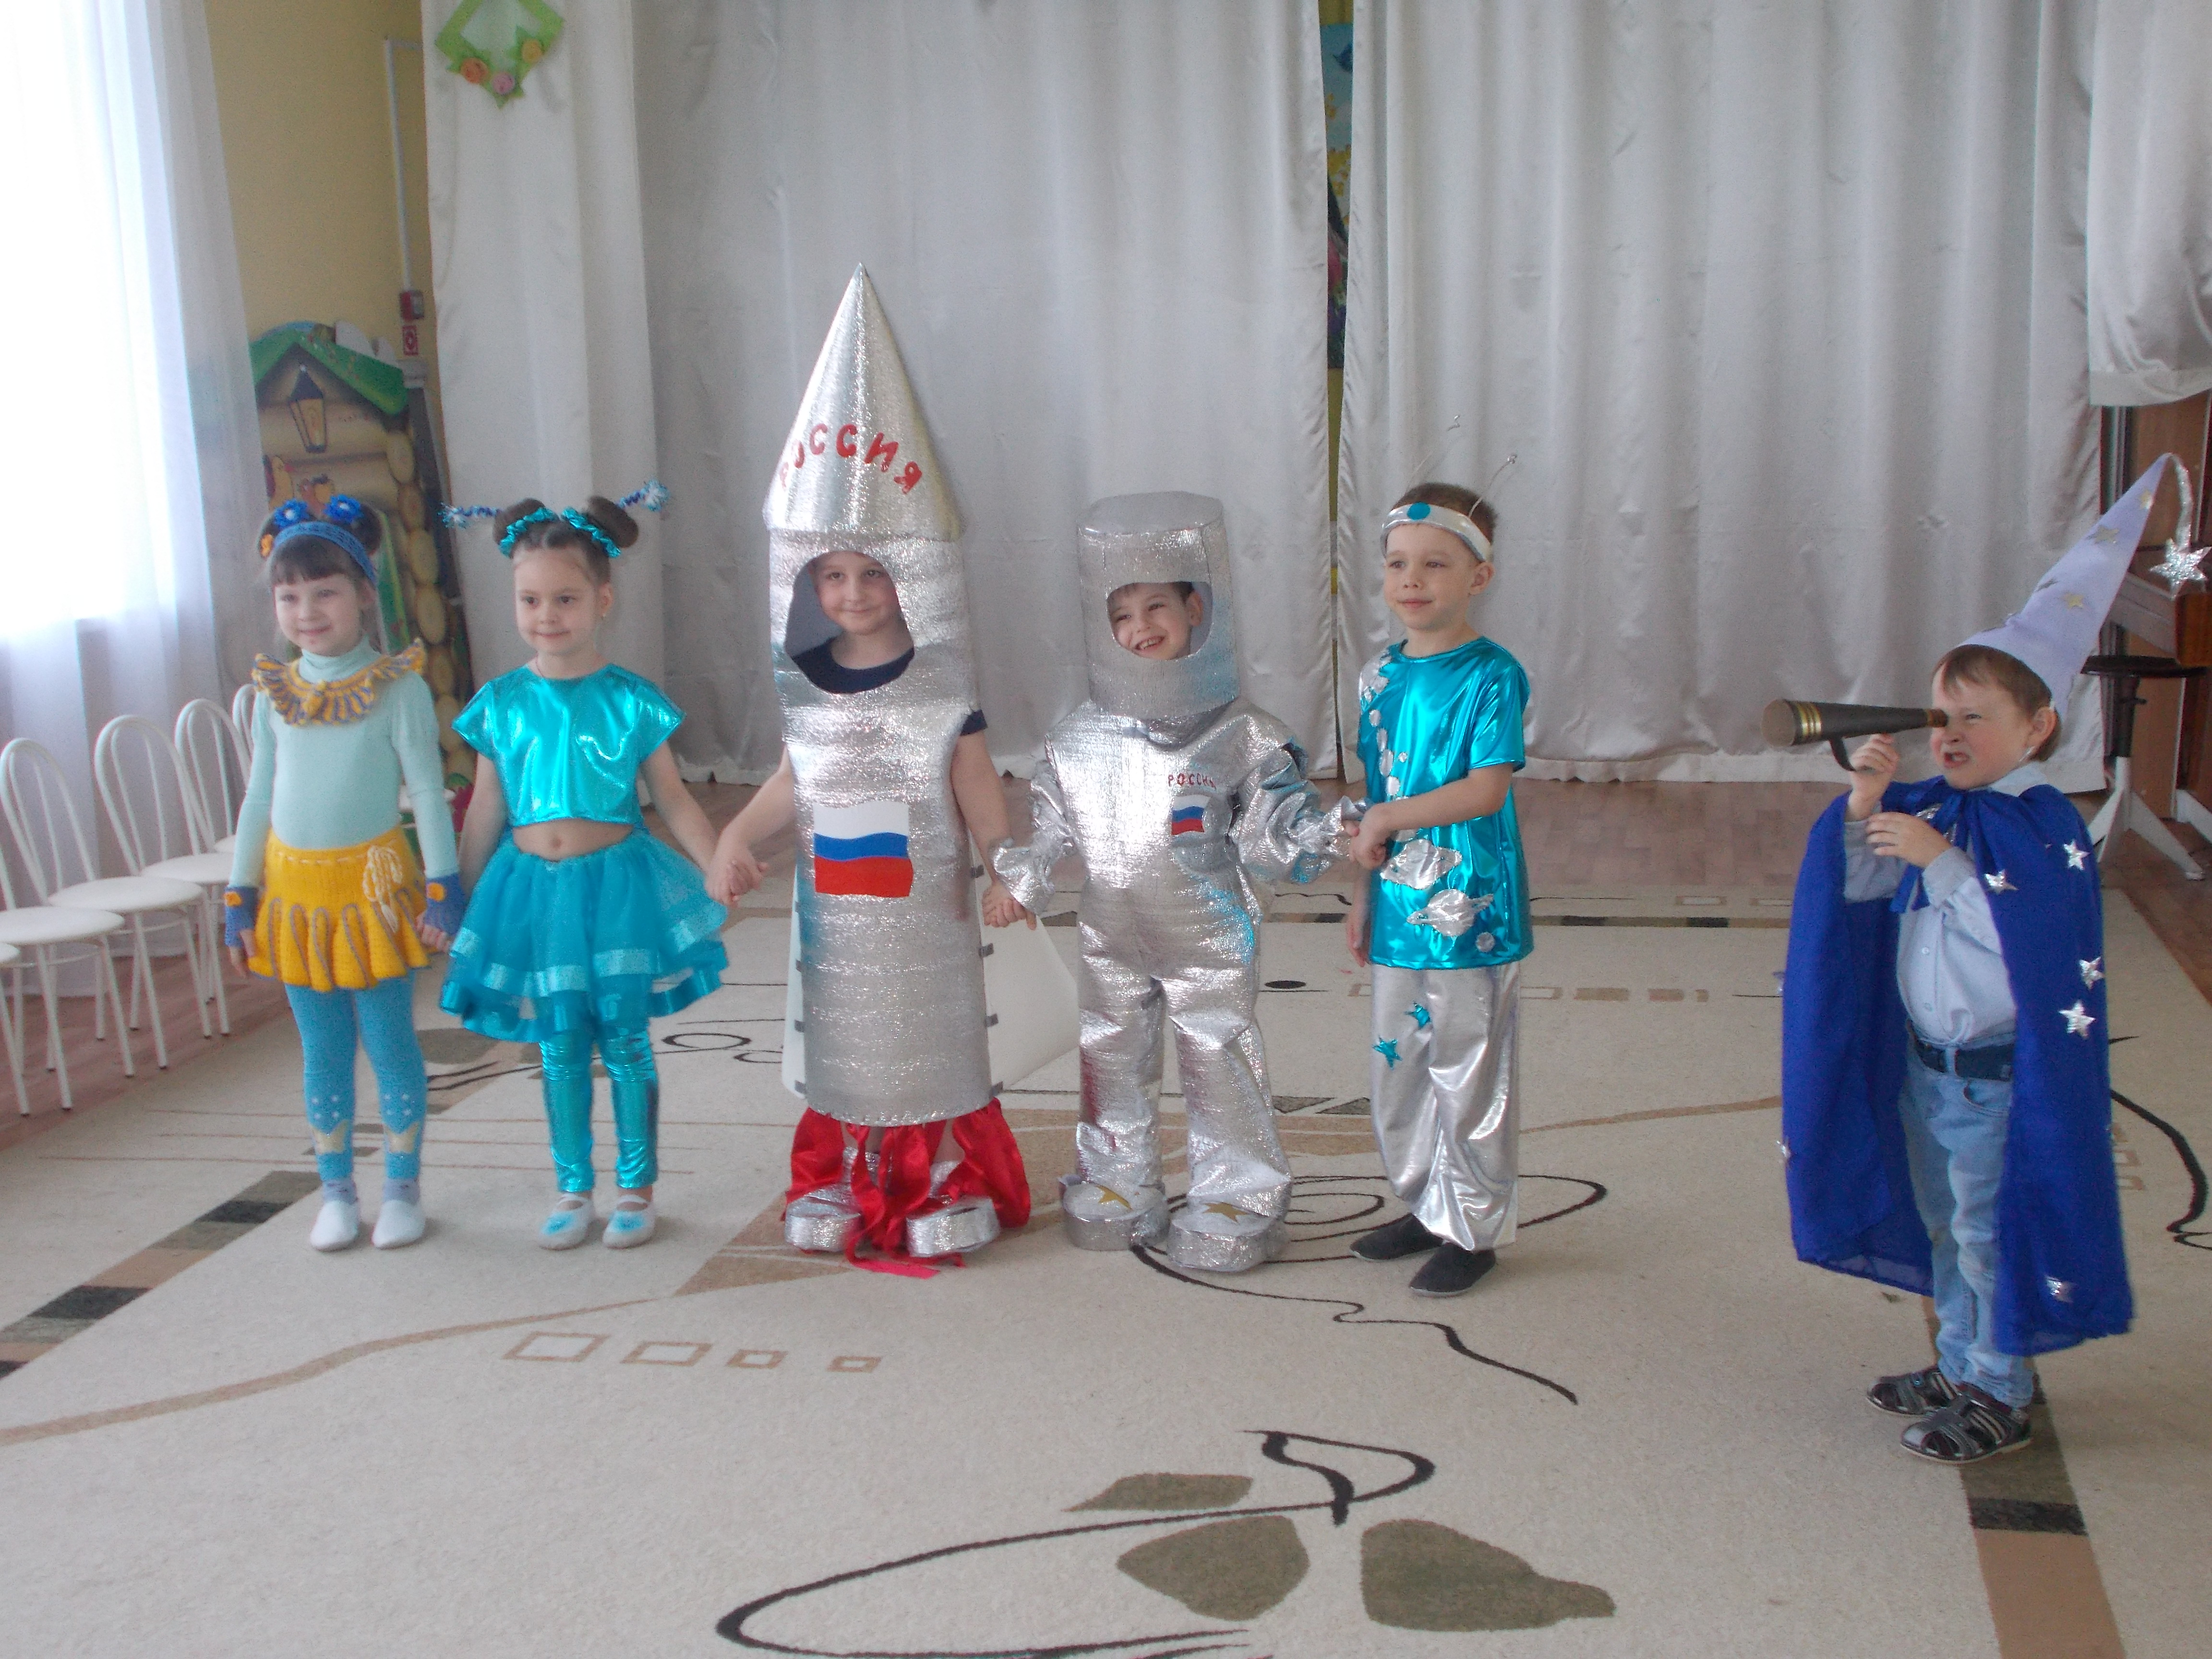 Костюм на день космонавтики для девочек. Костюм ко Дню космонавтики в детский сад. Космические костюмы для детей. День космонавтики для детей в детском саду костюмы. Конкурс космических костюмов в детском саду.